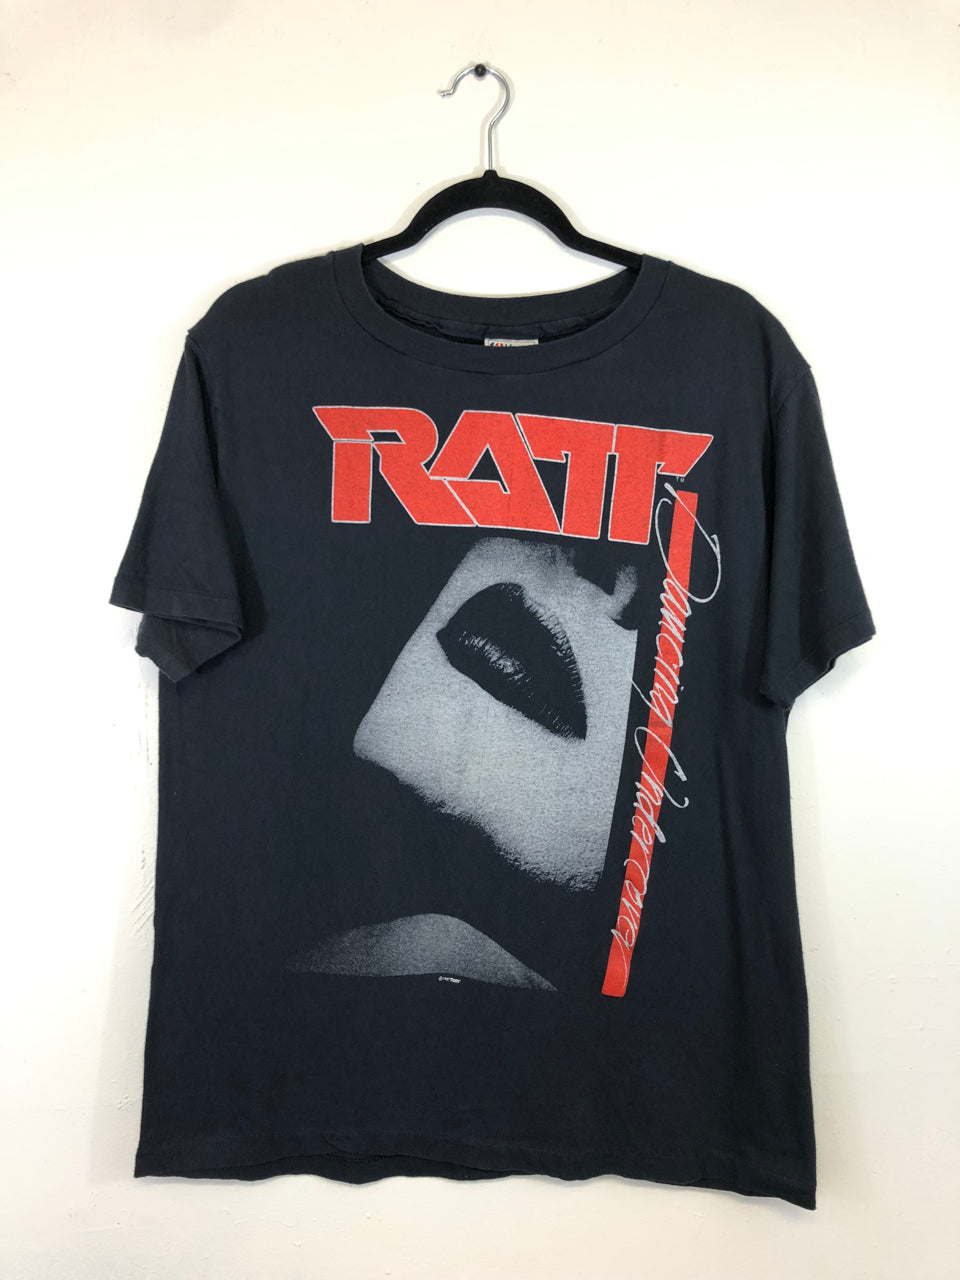 Ratt Dancing Undercover World Tour 1987 T-Shirt